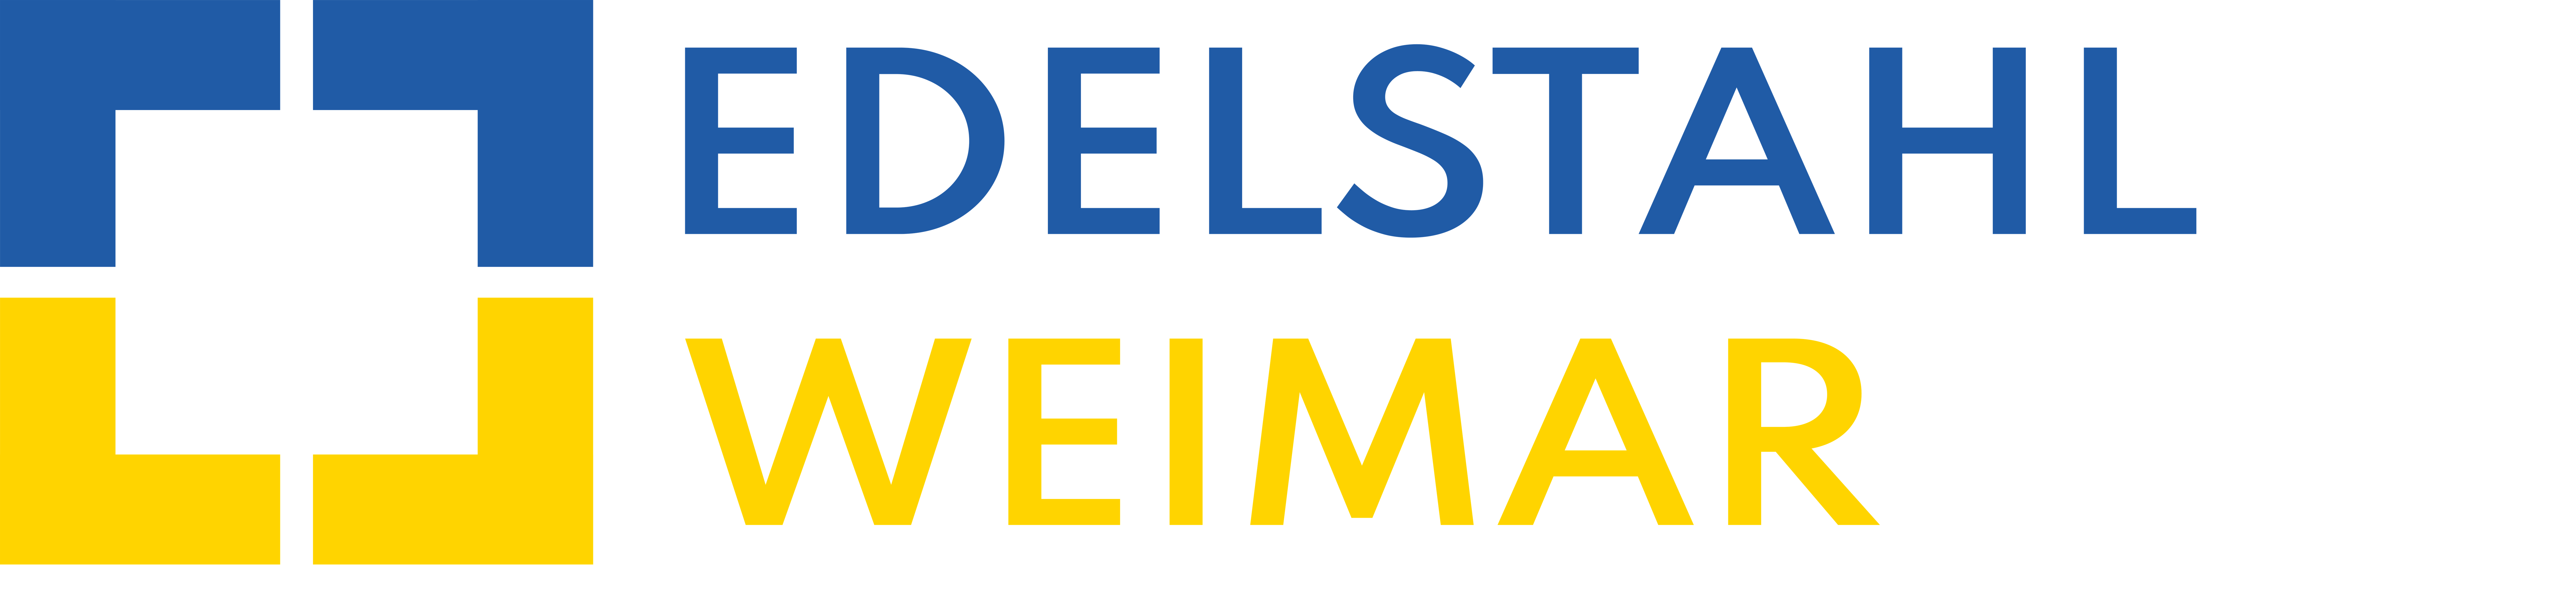 Edelstahl Weimar GmbH Logo